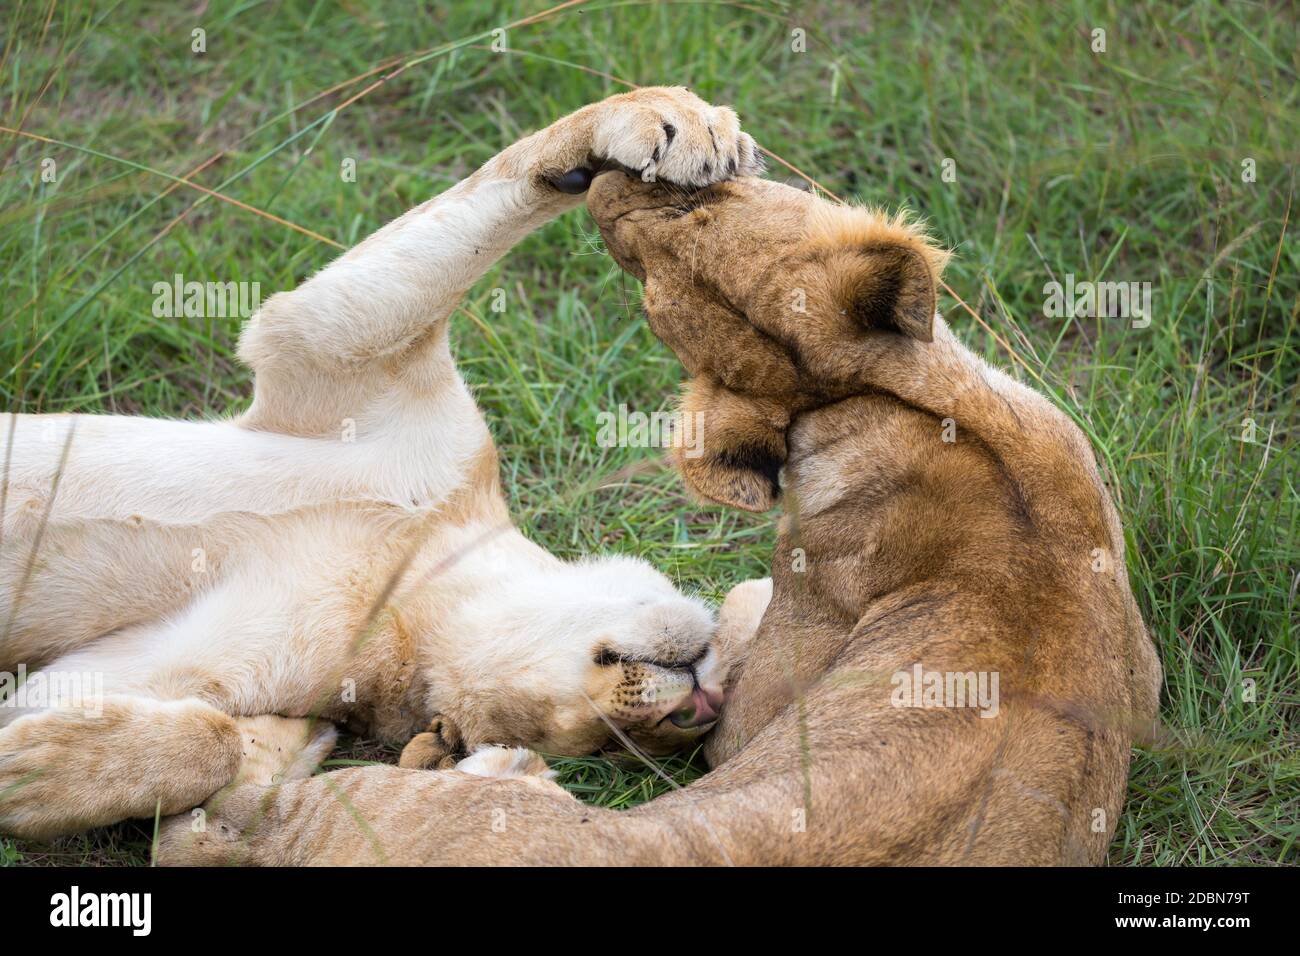 Les jeunes lions jouent ensemble dans l'herbe Banque D'Images